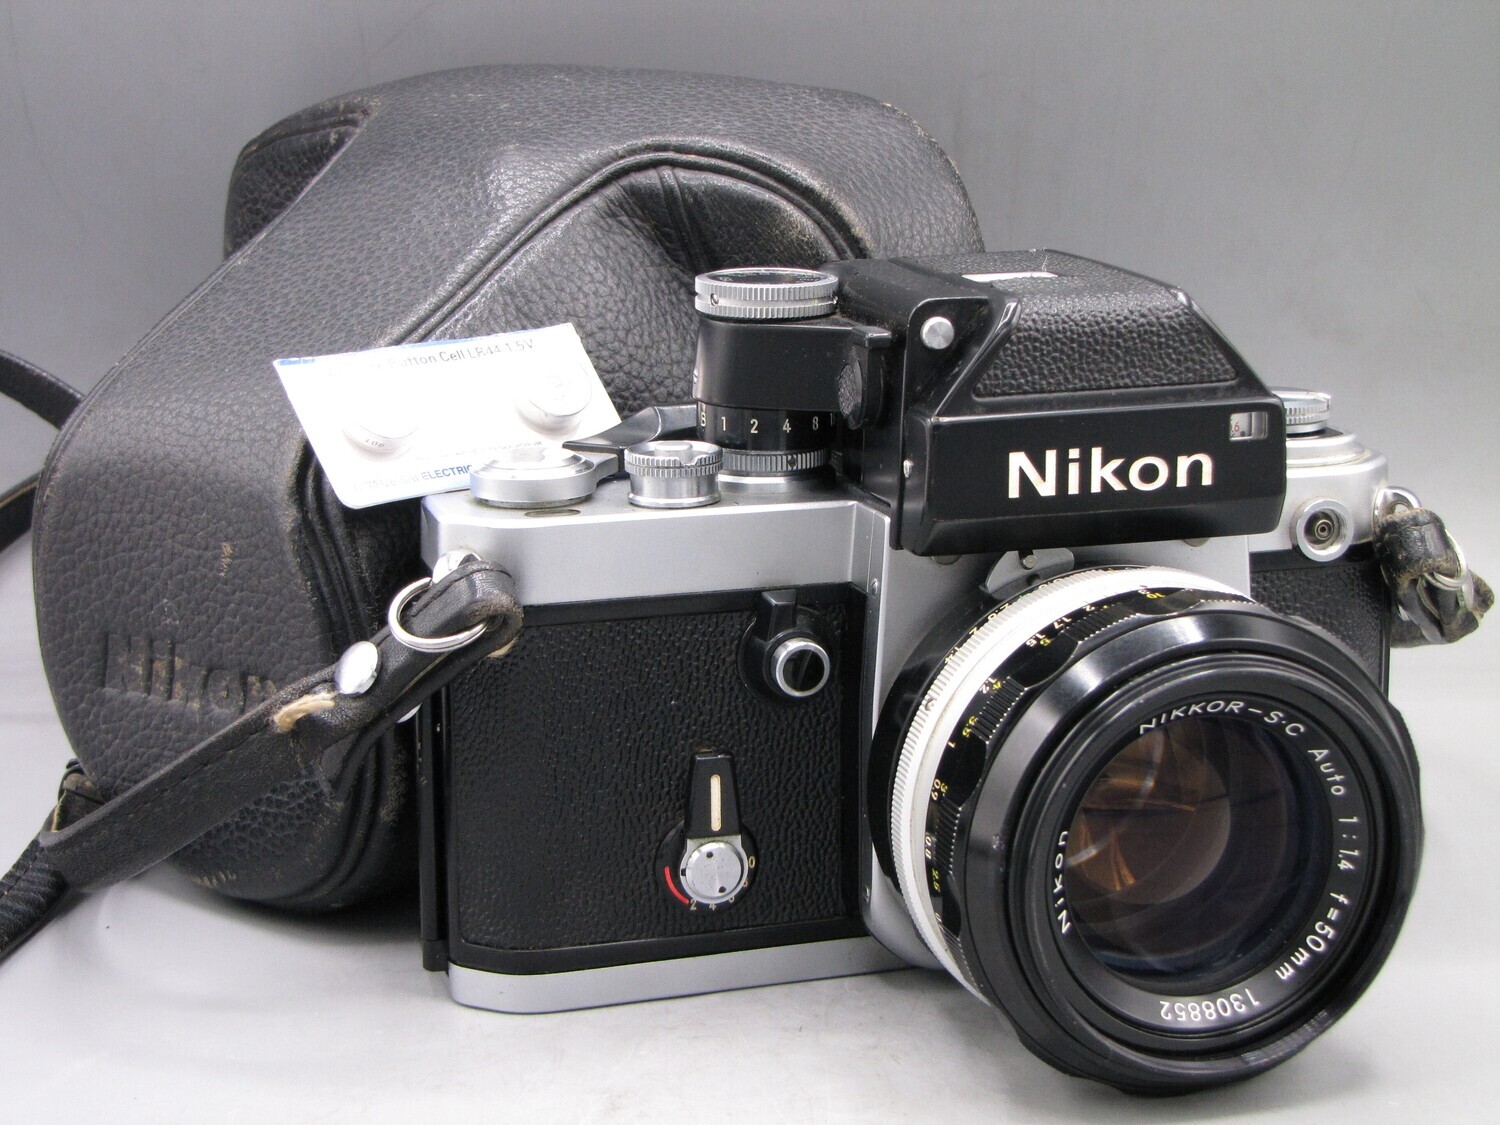 Nikon F2 35mm SLR Camera 1.4/50 Lens Clad Seals Battery